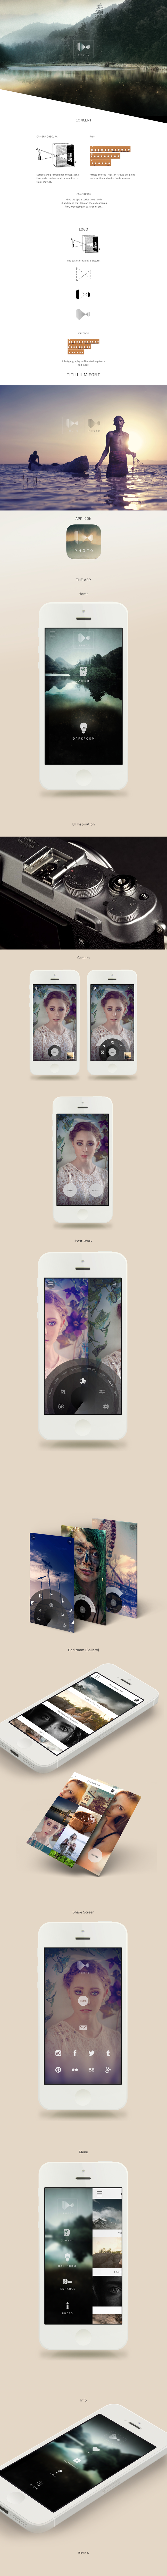 ios app iphone mobile ux UI design art photos Editing 